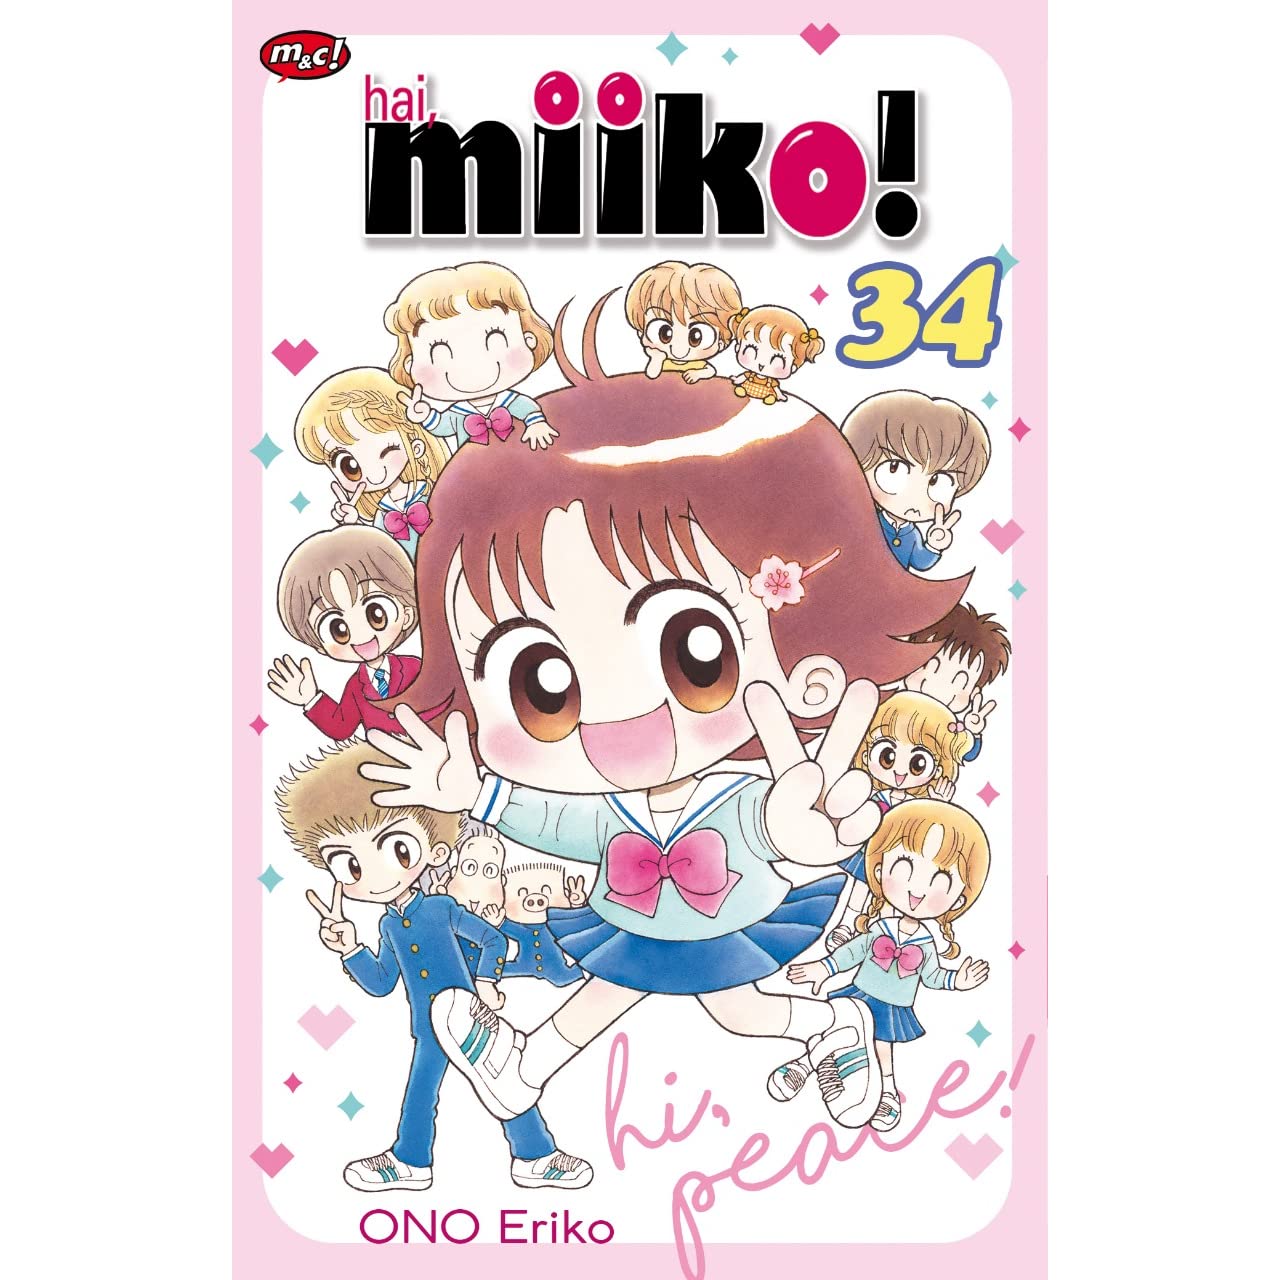 Hai Miiko! Vol. 5